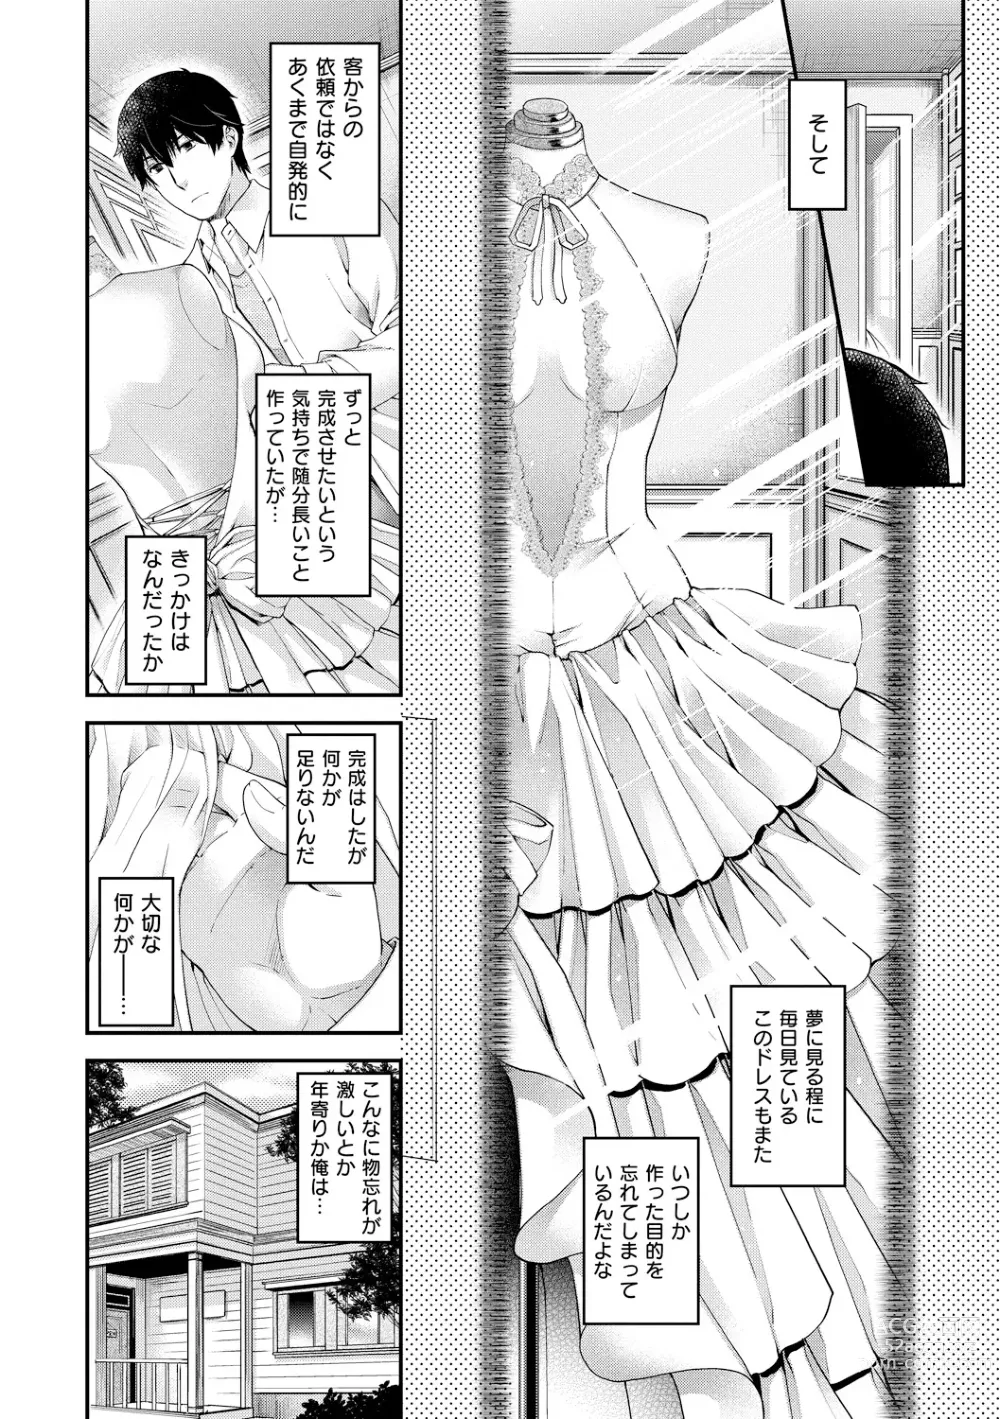 Page 10 of manga Chigiri to Musubi no Houteishiki